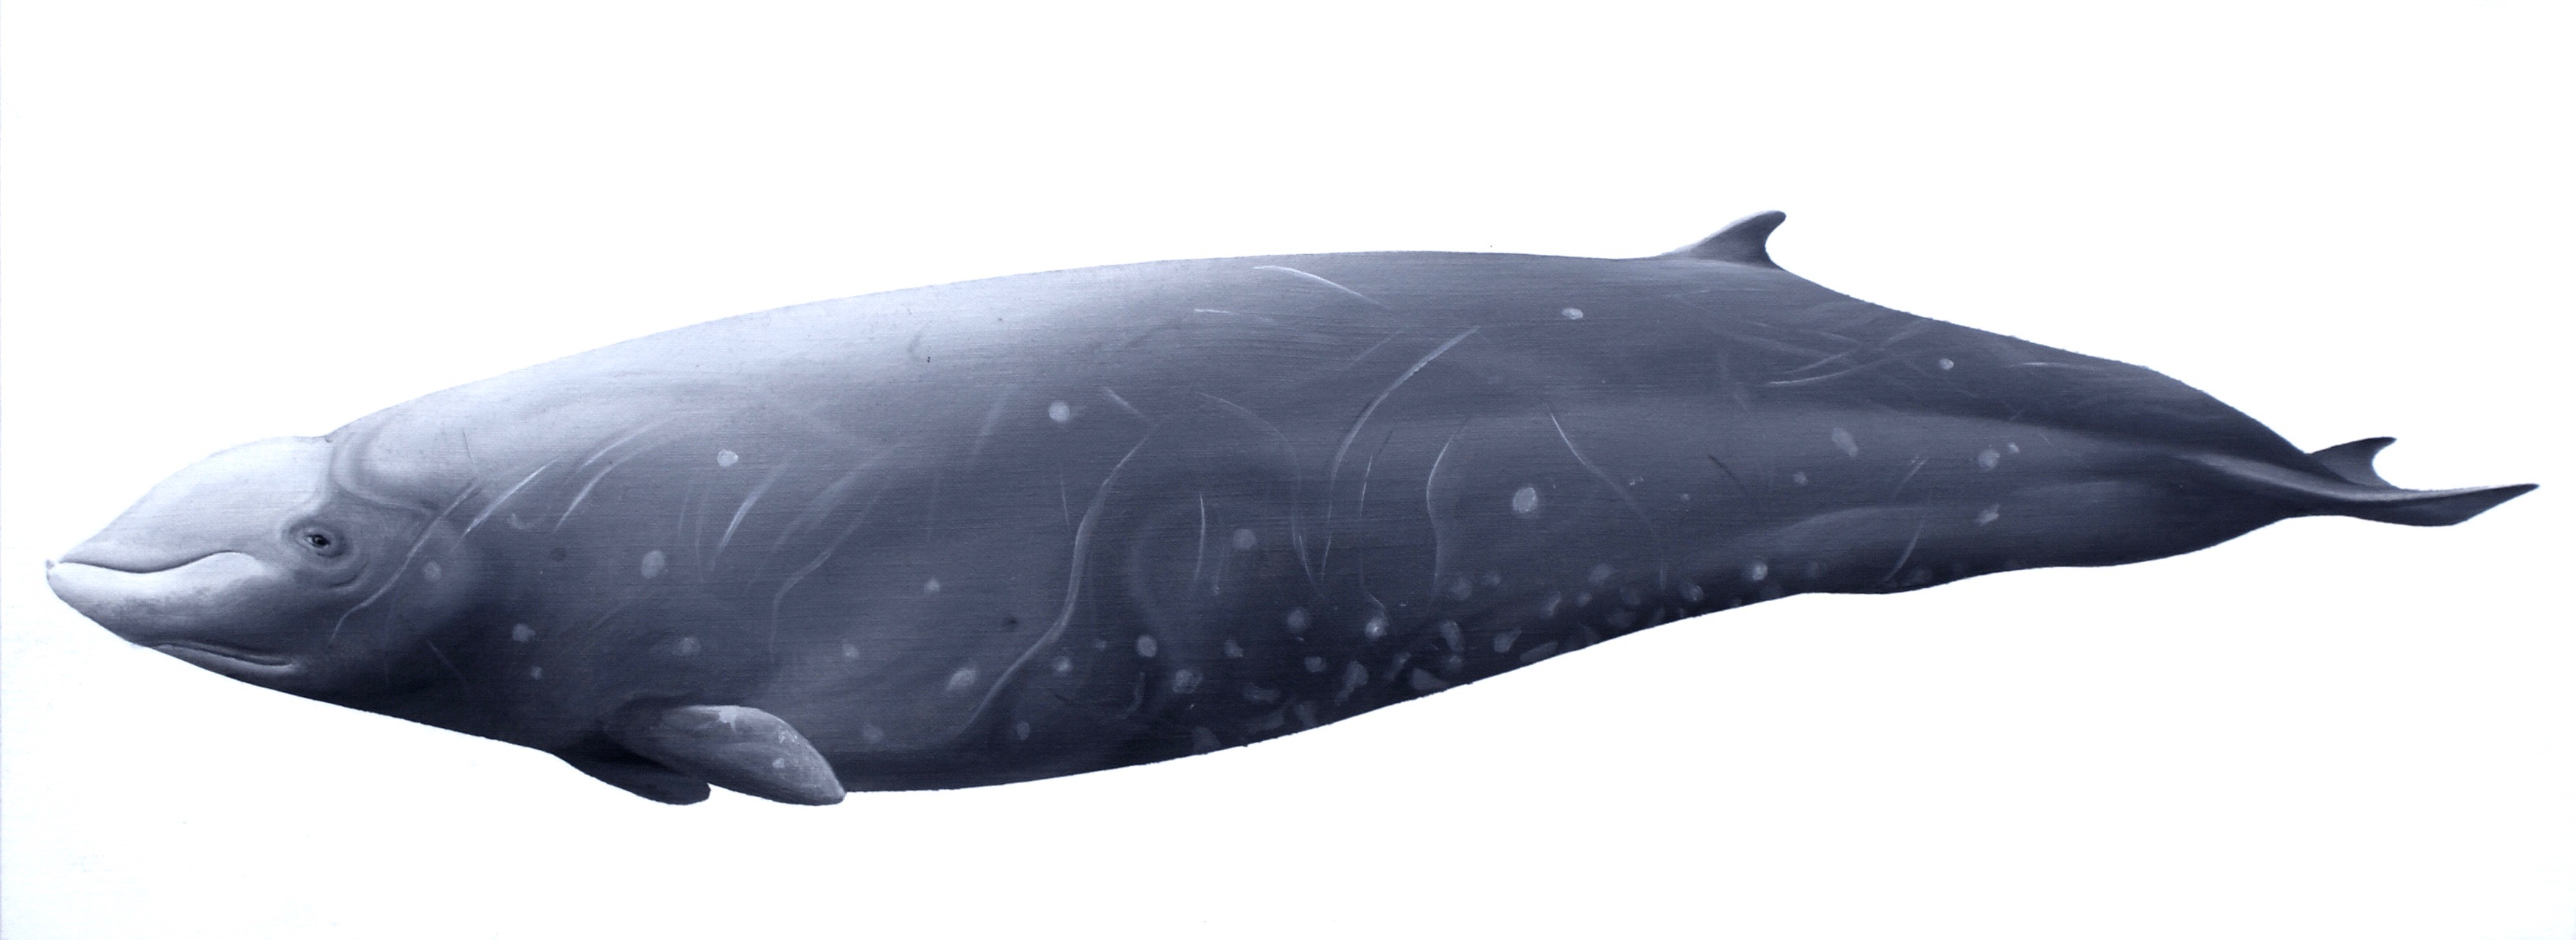 Vorvaňovec (Ziphius cavirostris). Jeden z nejlepších potápěčů zvířecí říše.  Kredit: Jörg Mazur, Wikimedia Commons CC BY-SA 4.0